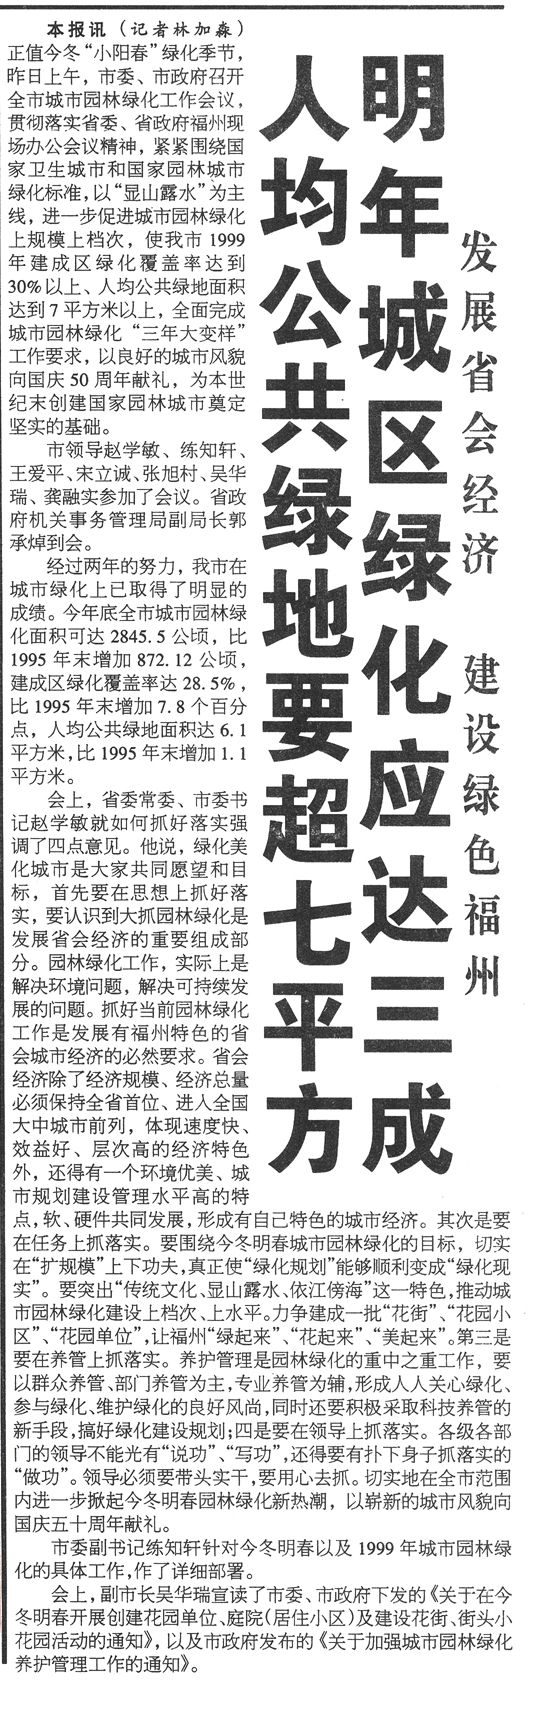 见证——喜迎《福州日报》正式出版25周年 | 千园之城魅力显 绿意葱茏满榕城